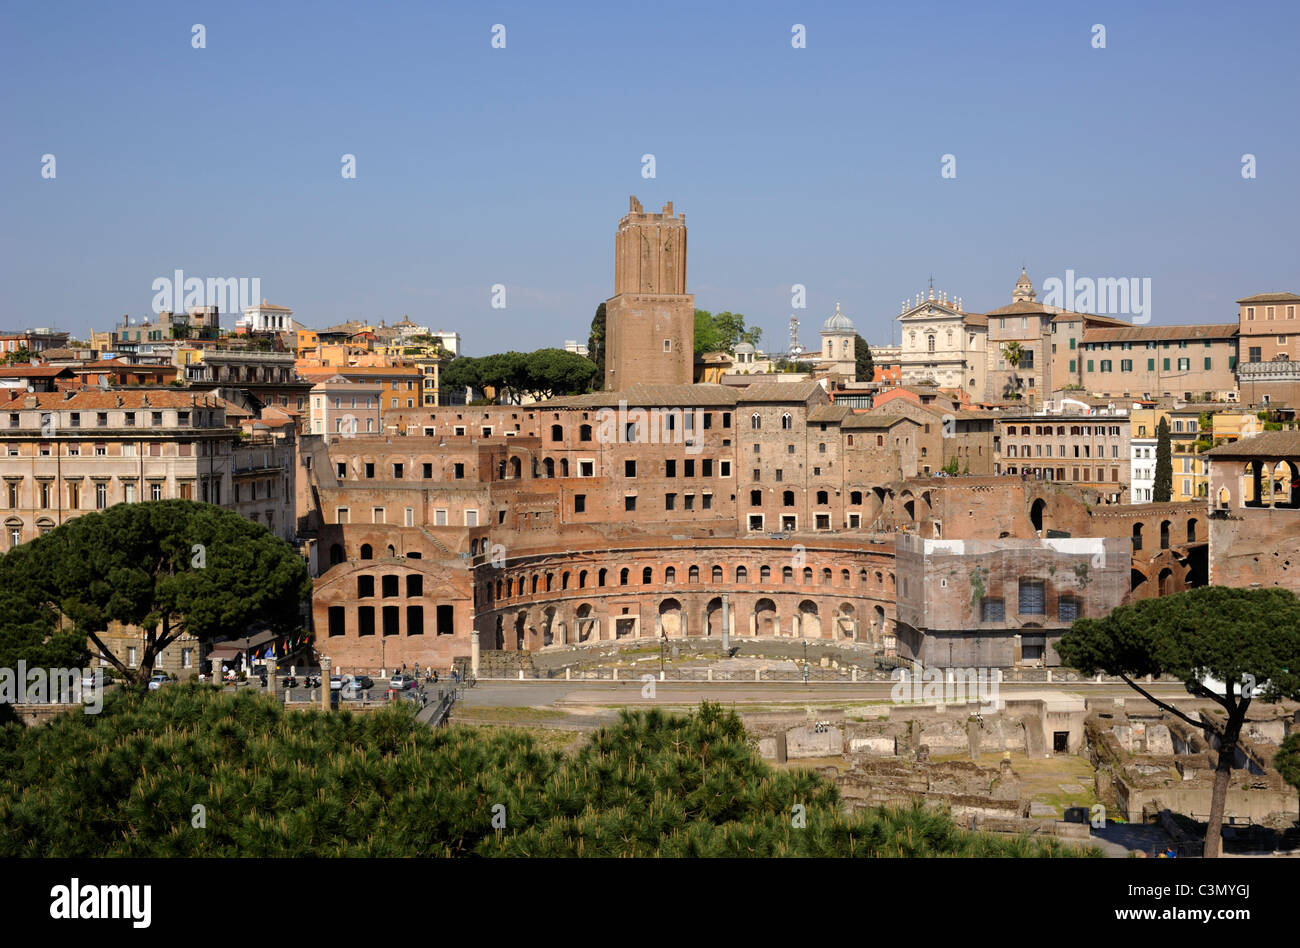 italy, rome, trajan's markets ruins Stock Photo